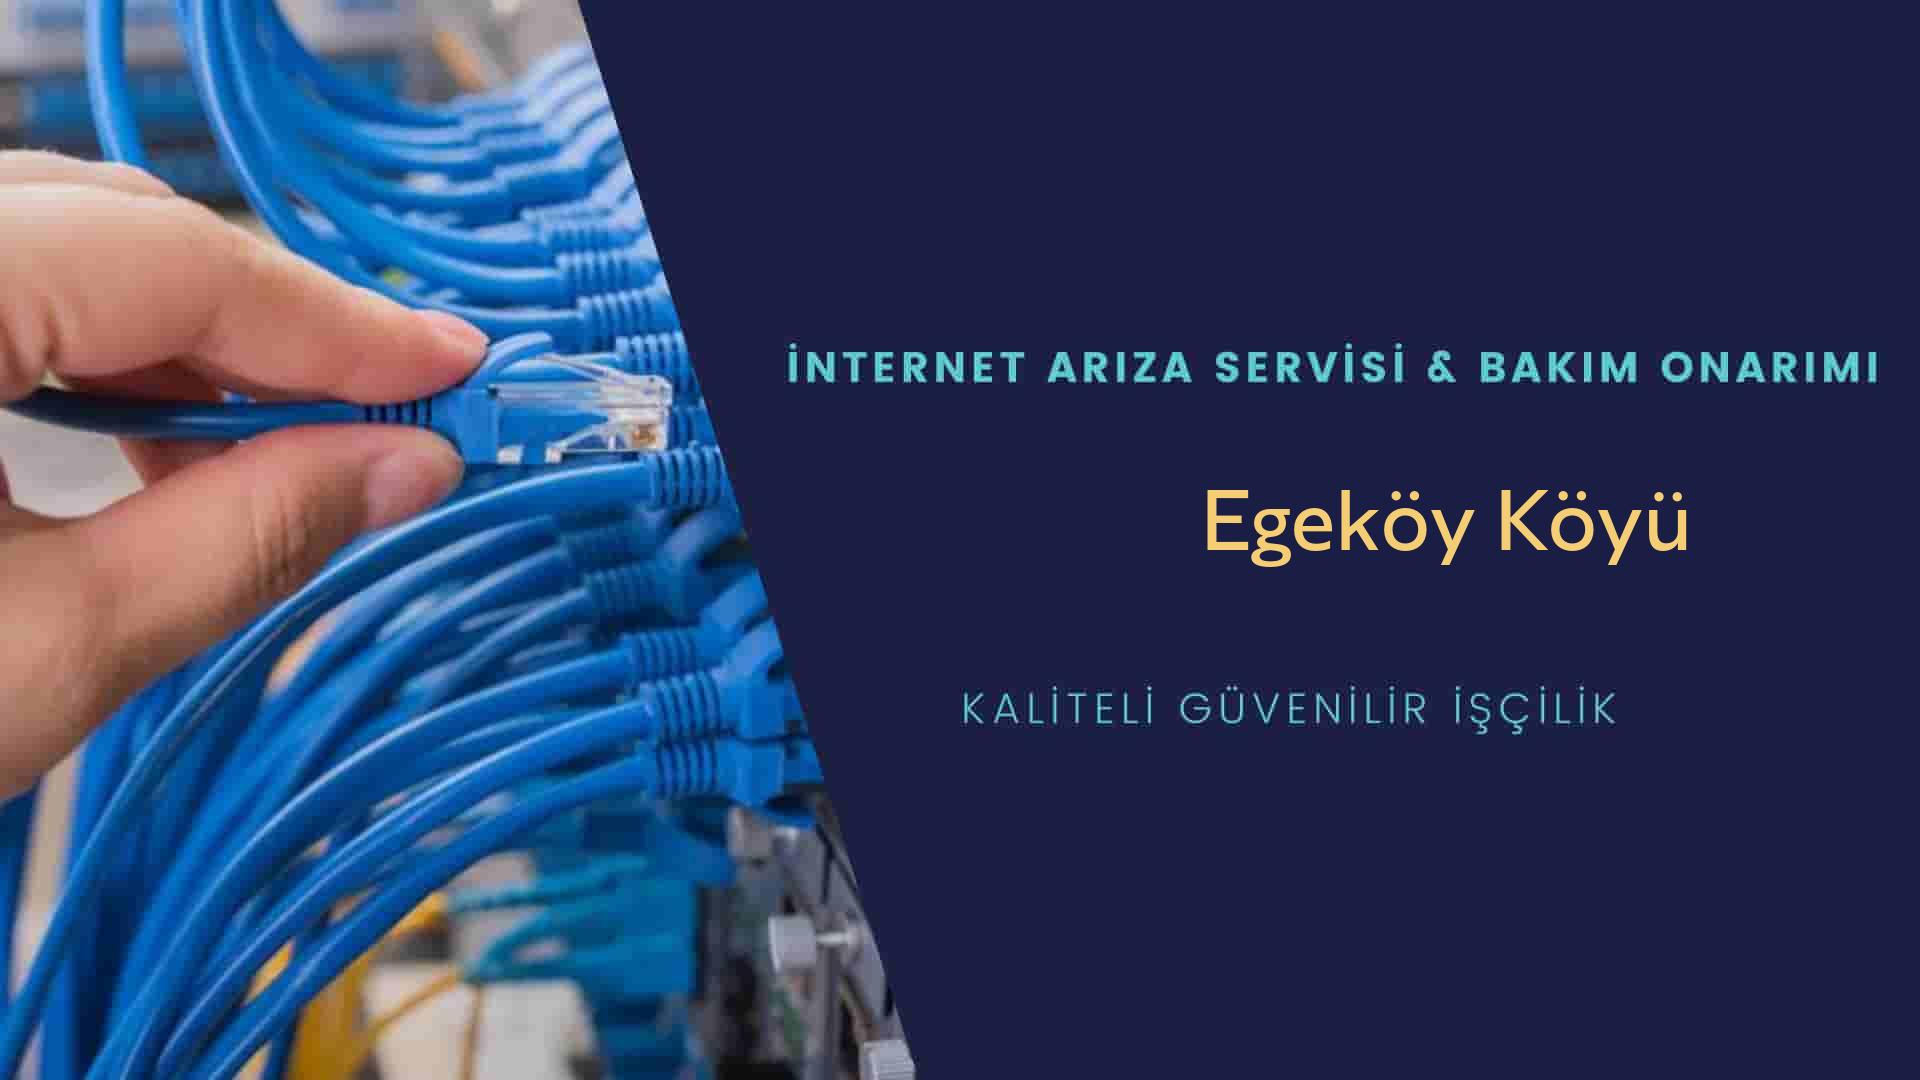 Egeköy Köyü internet kablosu çekimi yapan yerler veya elektrikçiler mi? arıyorsunuz doğru yerdesiniz o zaman sizlere 7/24 yardımcı olacak profesyonel ustalarımız bir telefon kadar yakındır size.